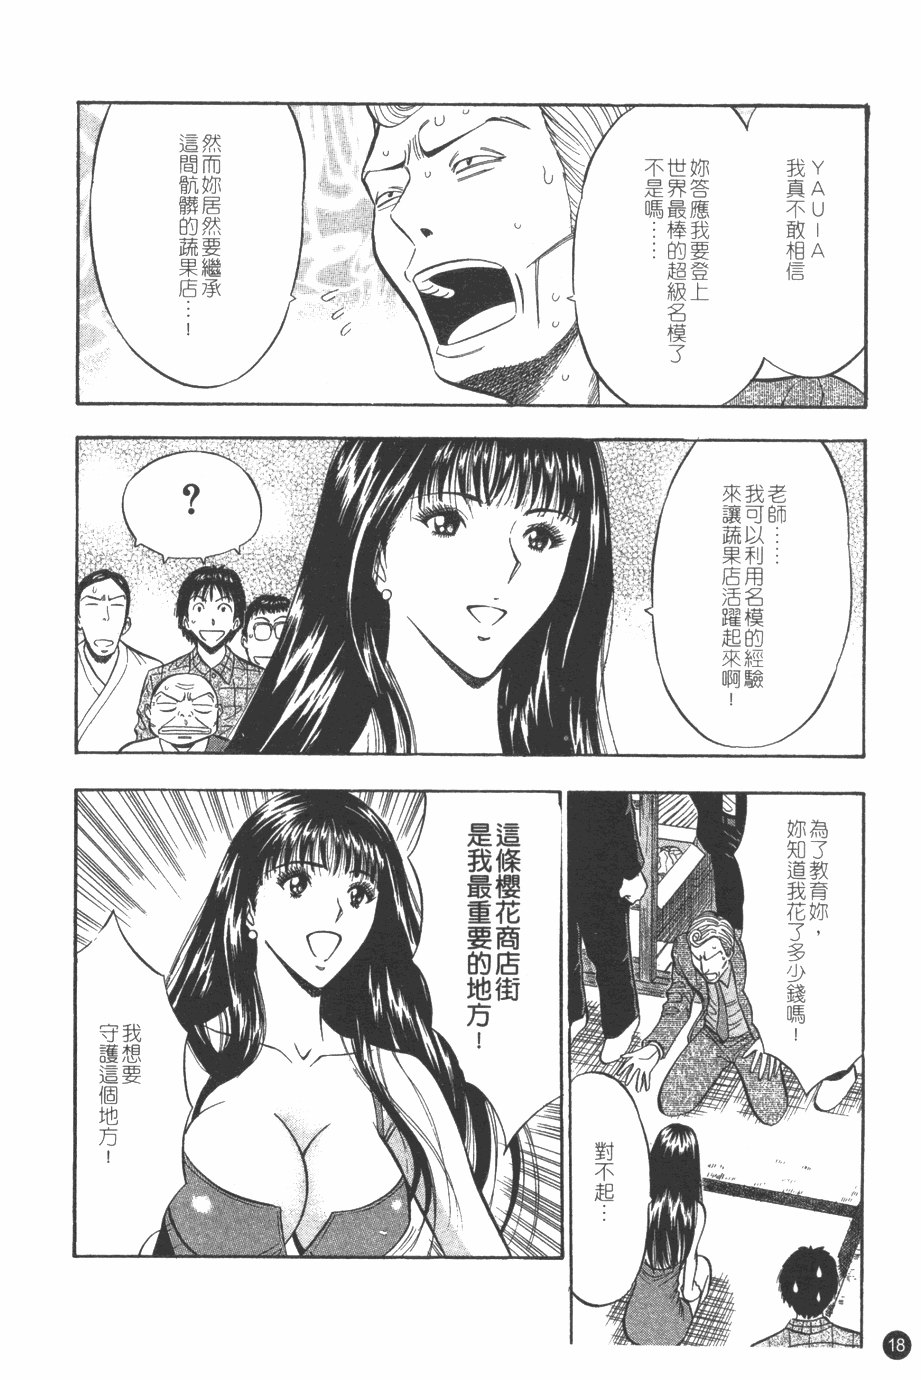 [Nagashima Chosuke] Sakuradoori no Megami - The Venus of SAKURA St. 1 [Chinese] 18